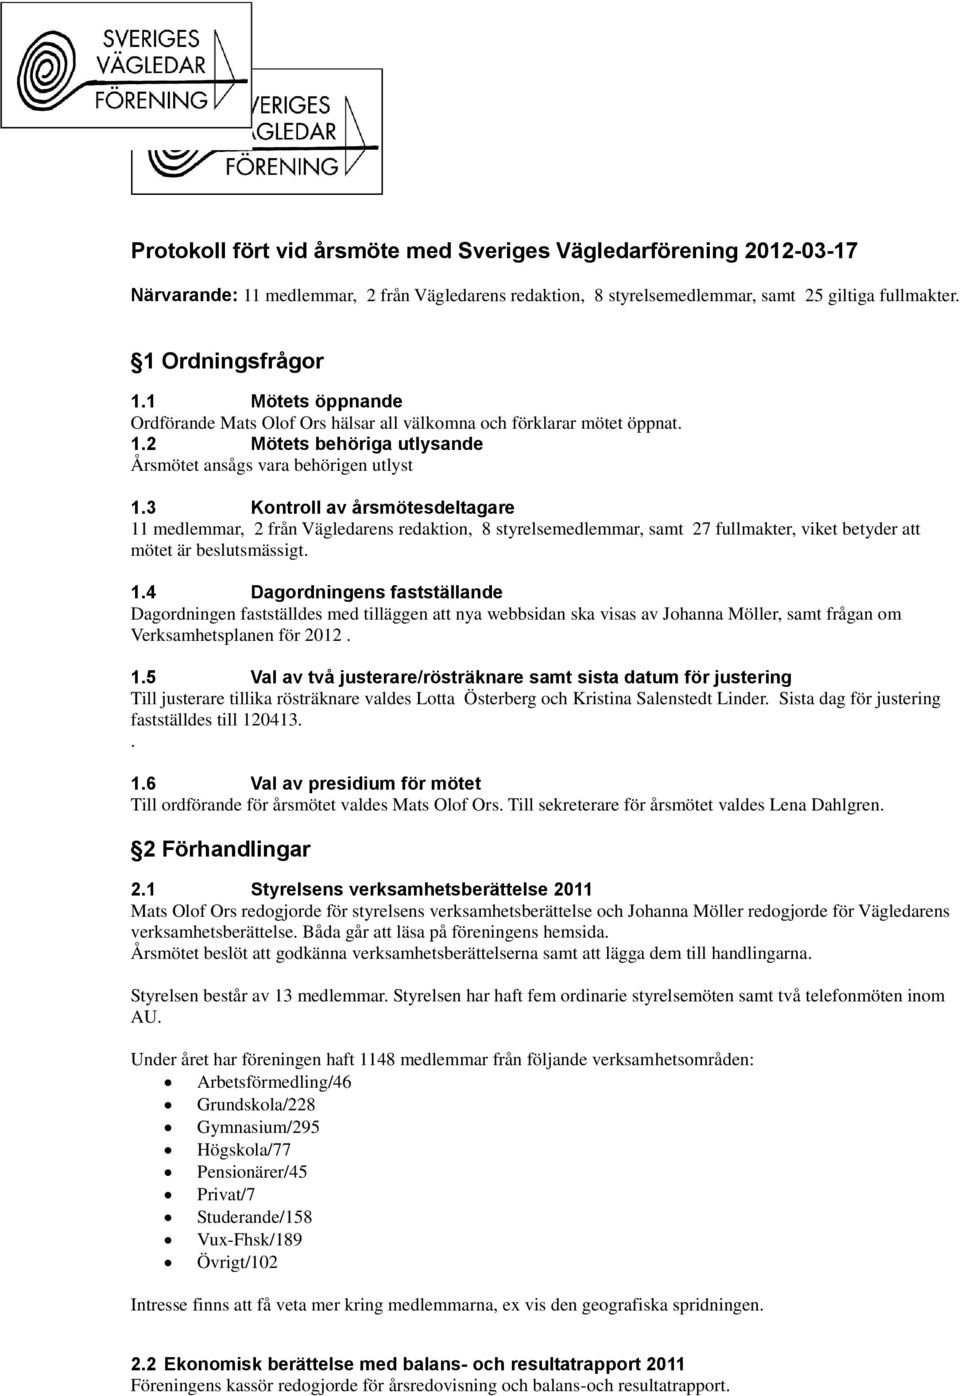 3 Kontroll av årsmötesdeltagare 11 medlemmar, 2 från Vägledarens redaktion, 8 styrelsemedlemmar, samt 27 fullmakter, viket betyder att mötet är beslutsmässigt. 1.4 Dagordningens fastställande Dagordningen fastställdes med tilläggen att nya webbsidan ska visas av Johanna Möller, samt frågan om Verksamhetsplanen för 2012.